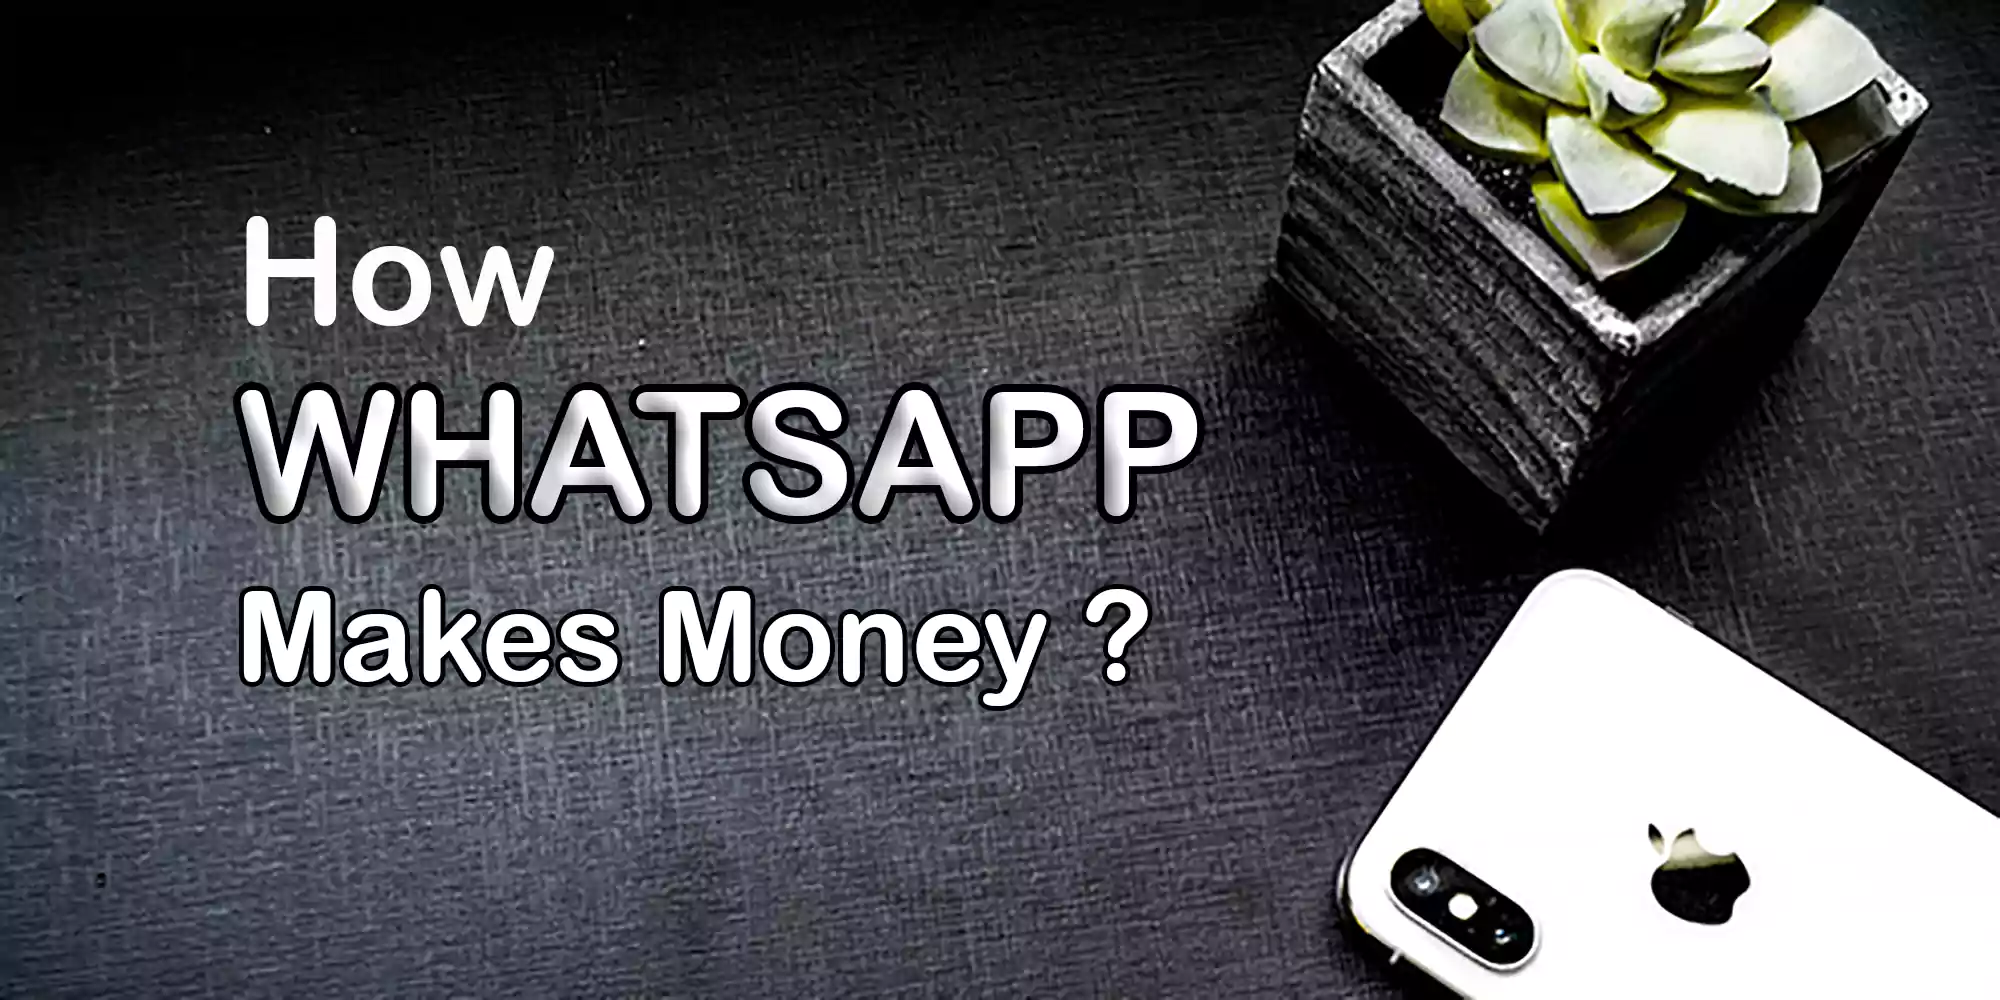 WhatsApp Makes Money